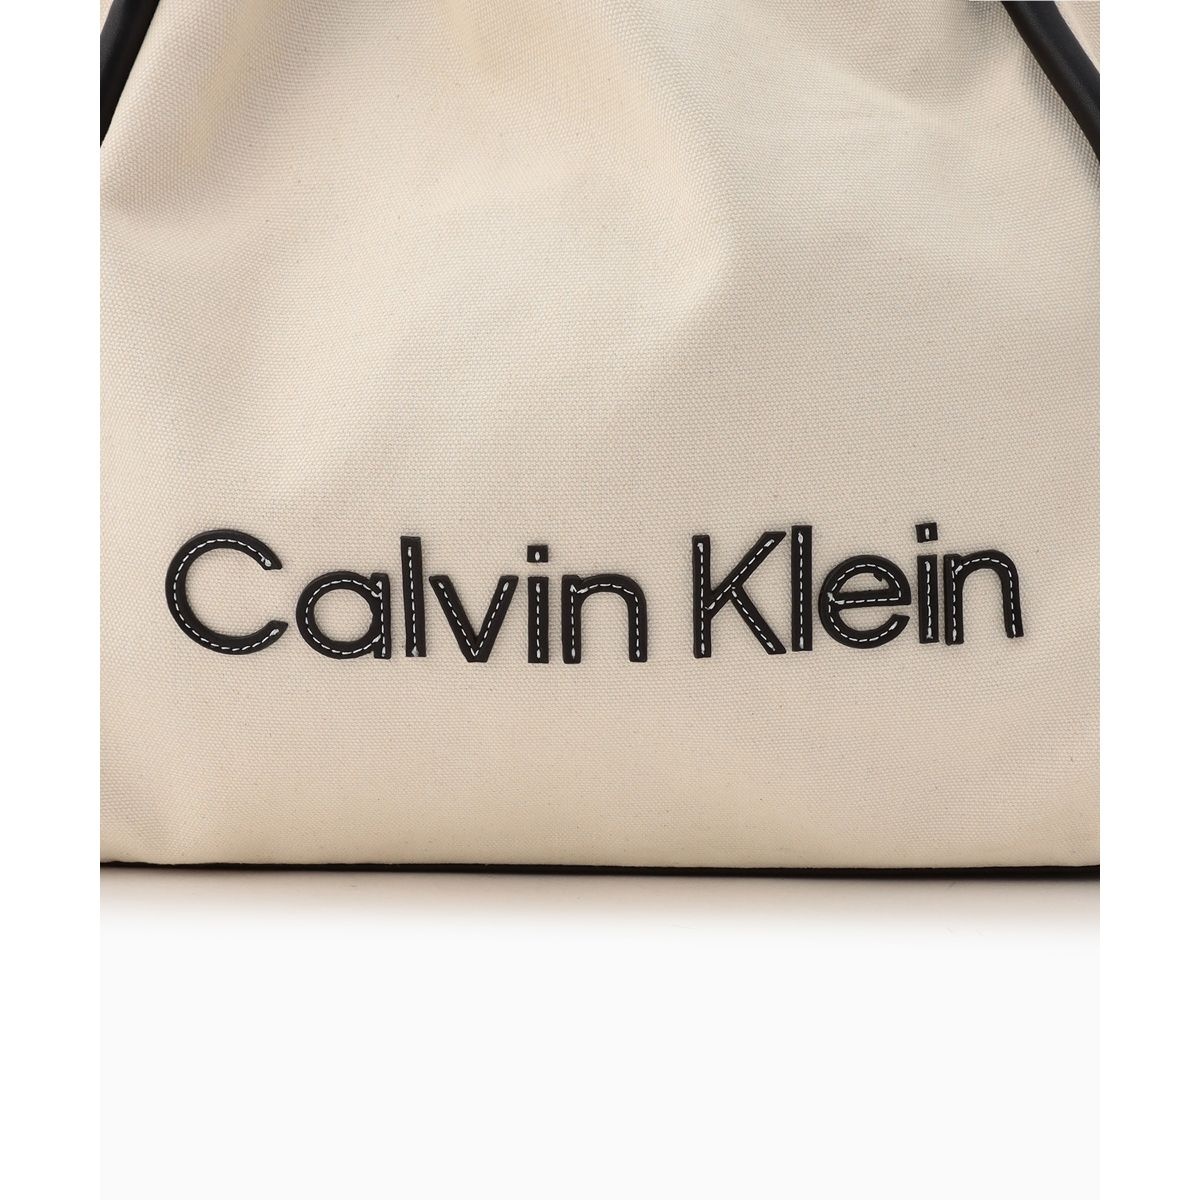 とてもオシャレで可愛いですがCalvin klein リゾートキャンバストートバッグ